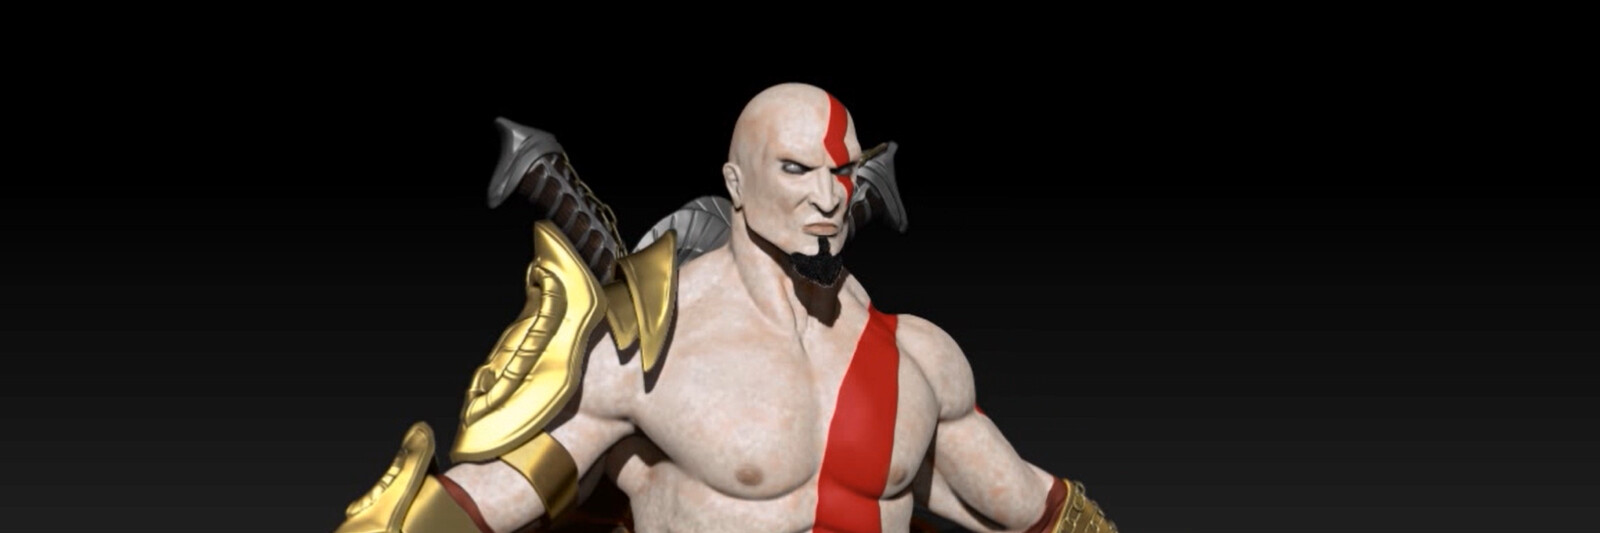 God of War's Kratos